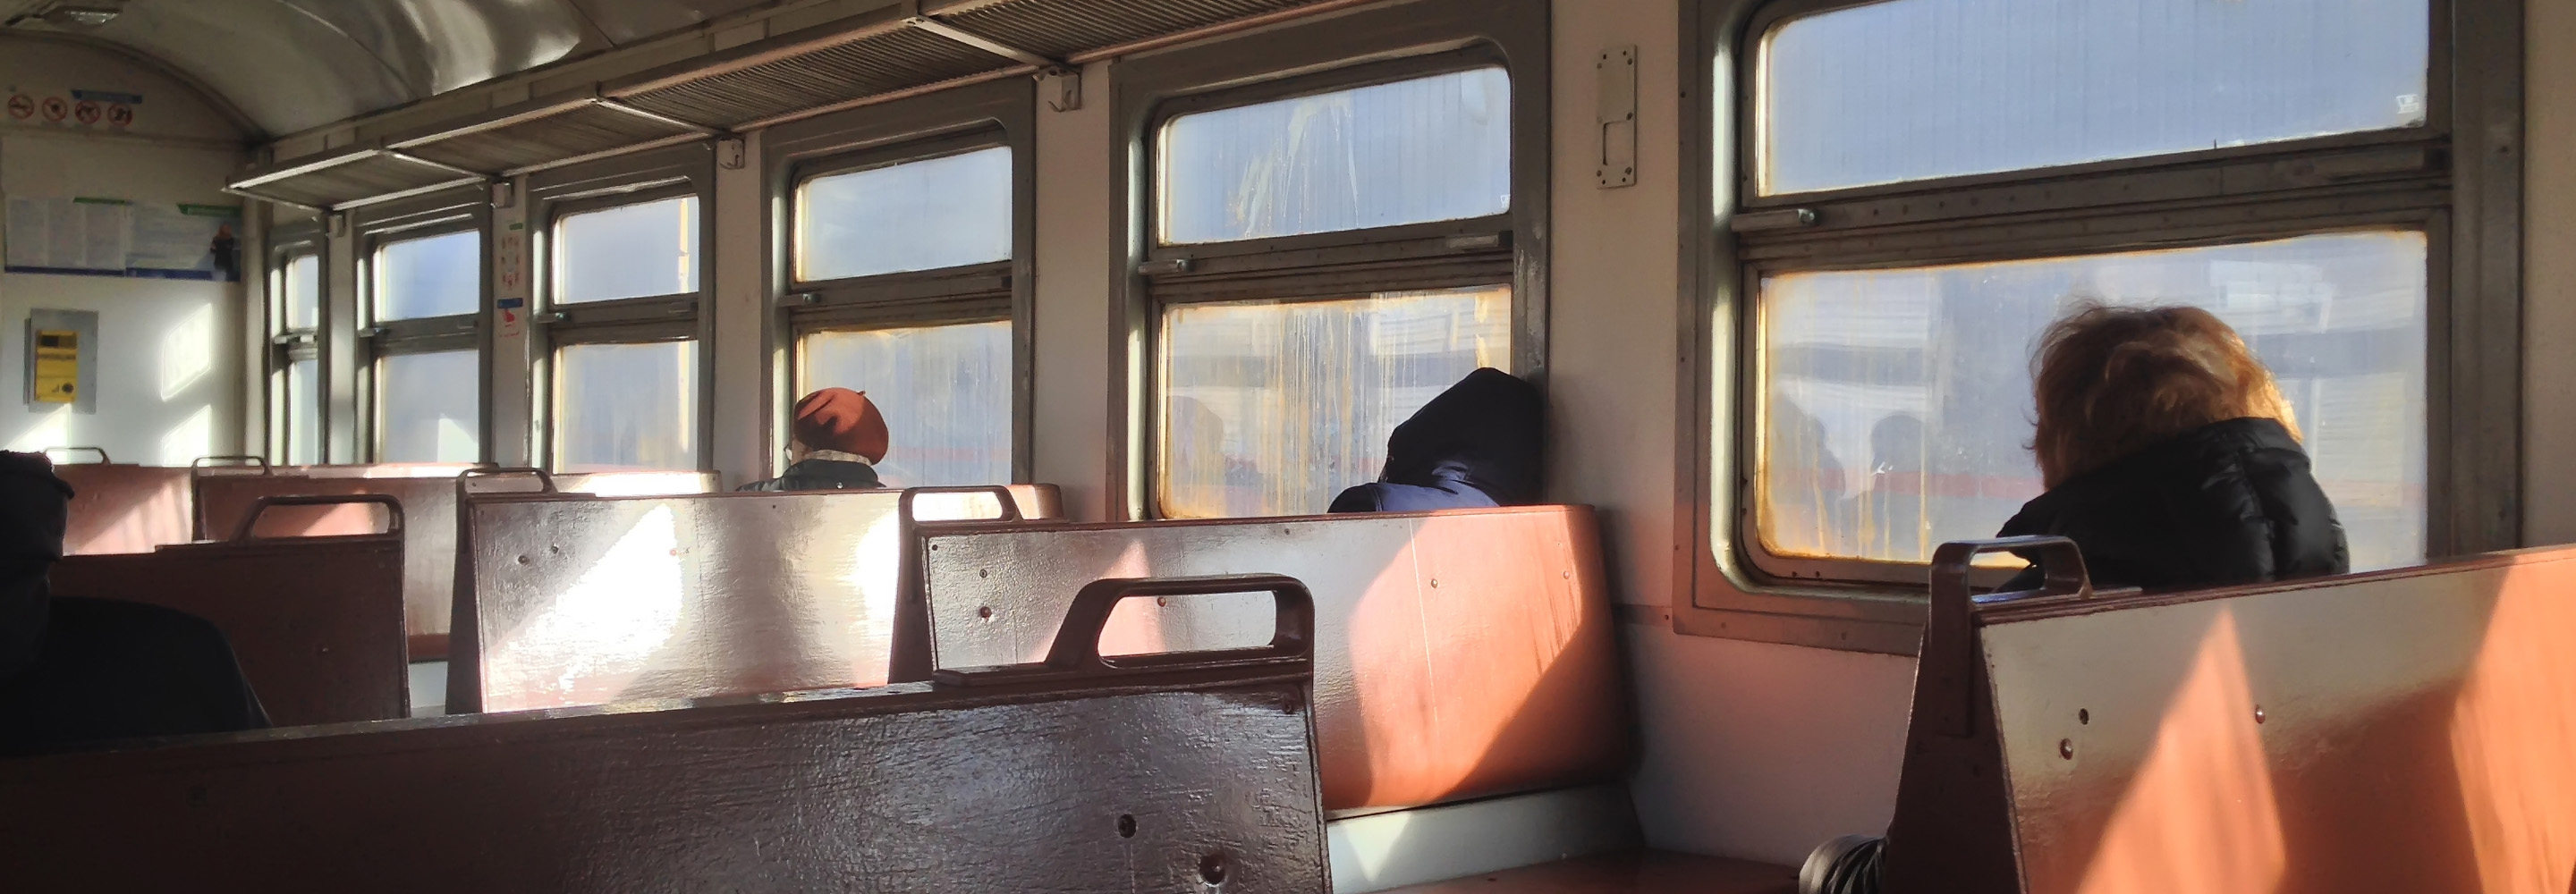 Женщина в поезде легла спать на чужой нижней полке